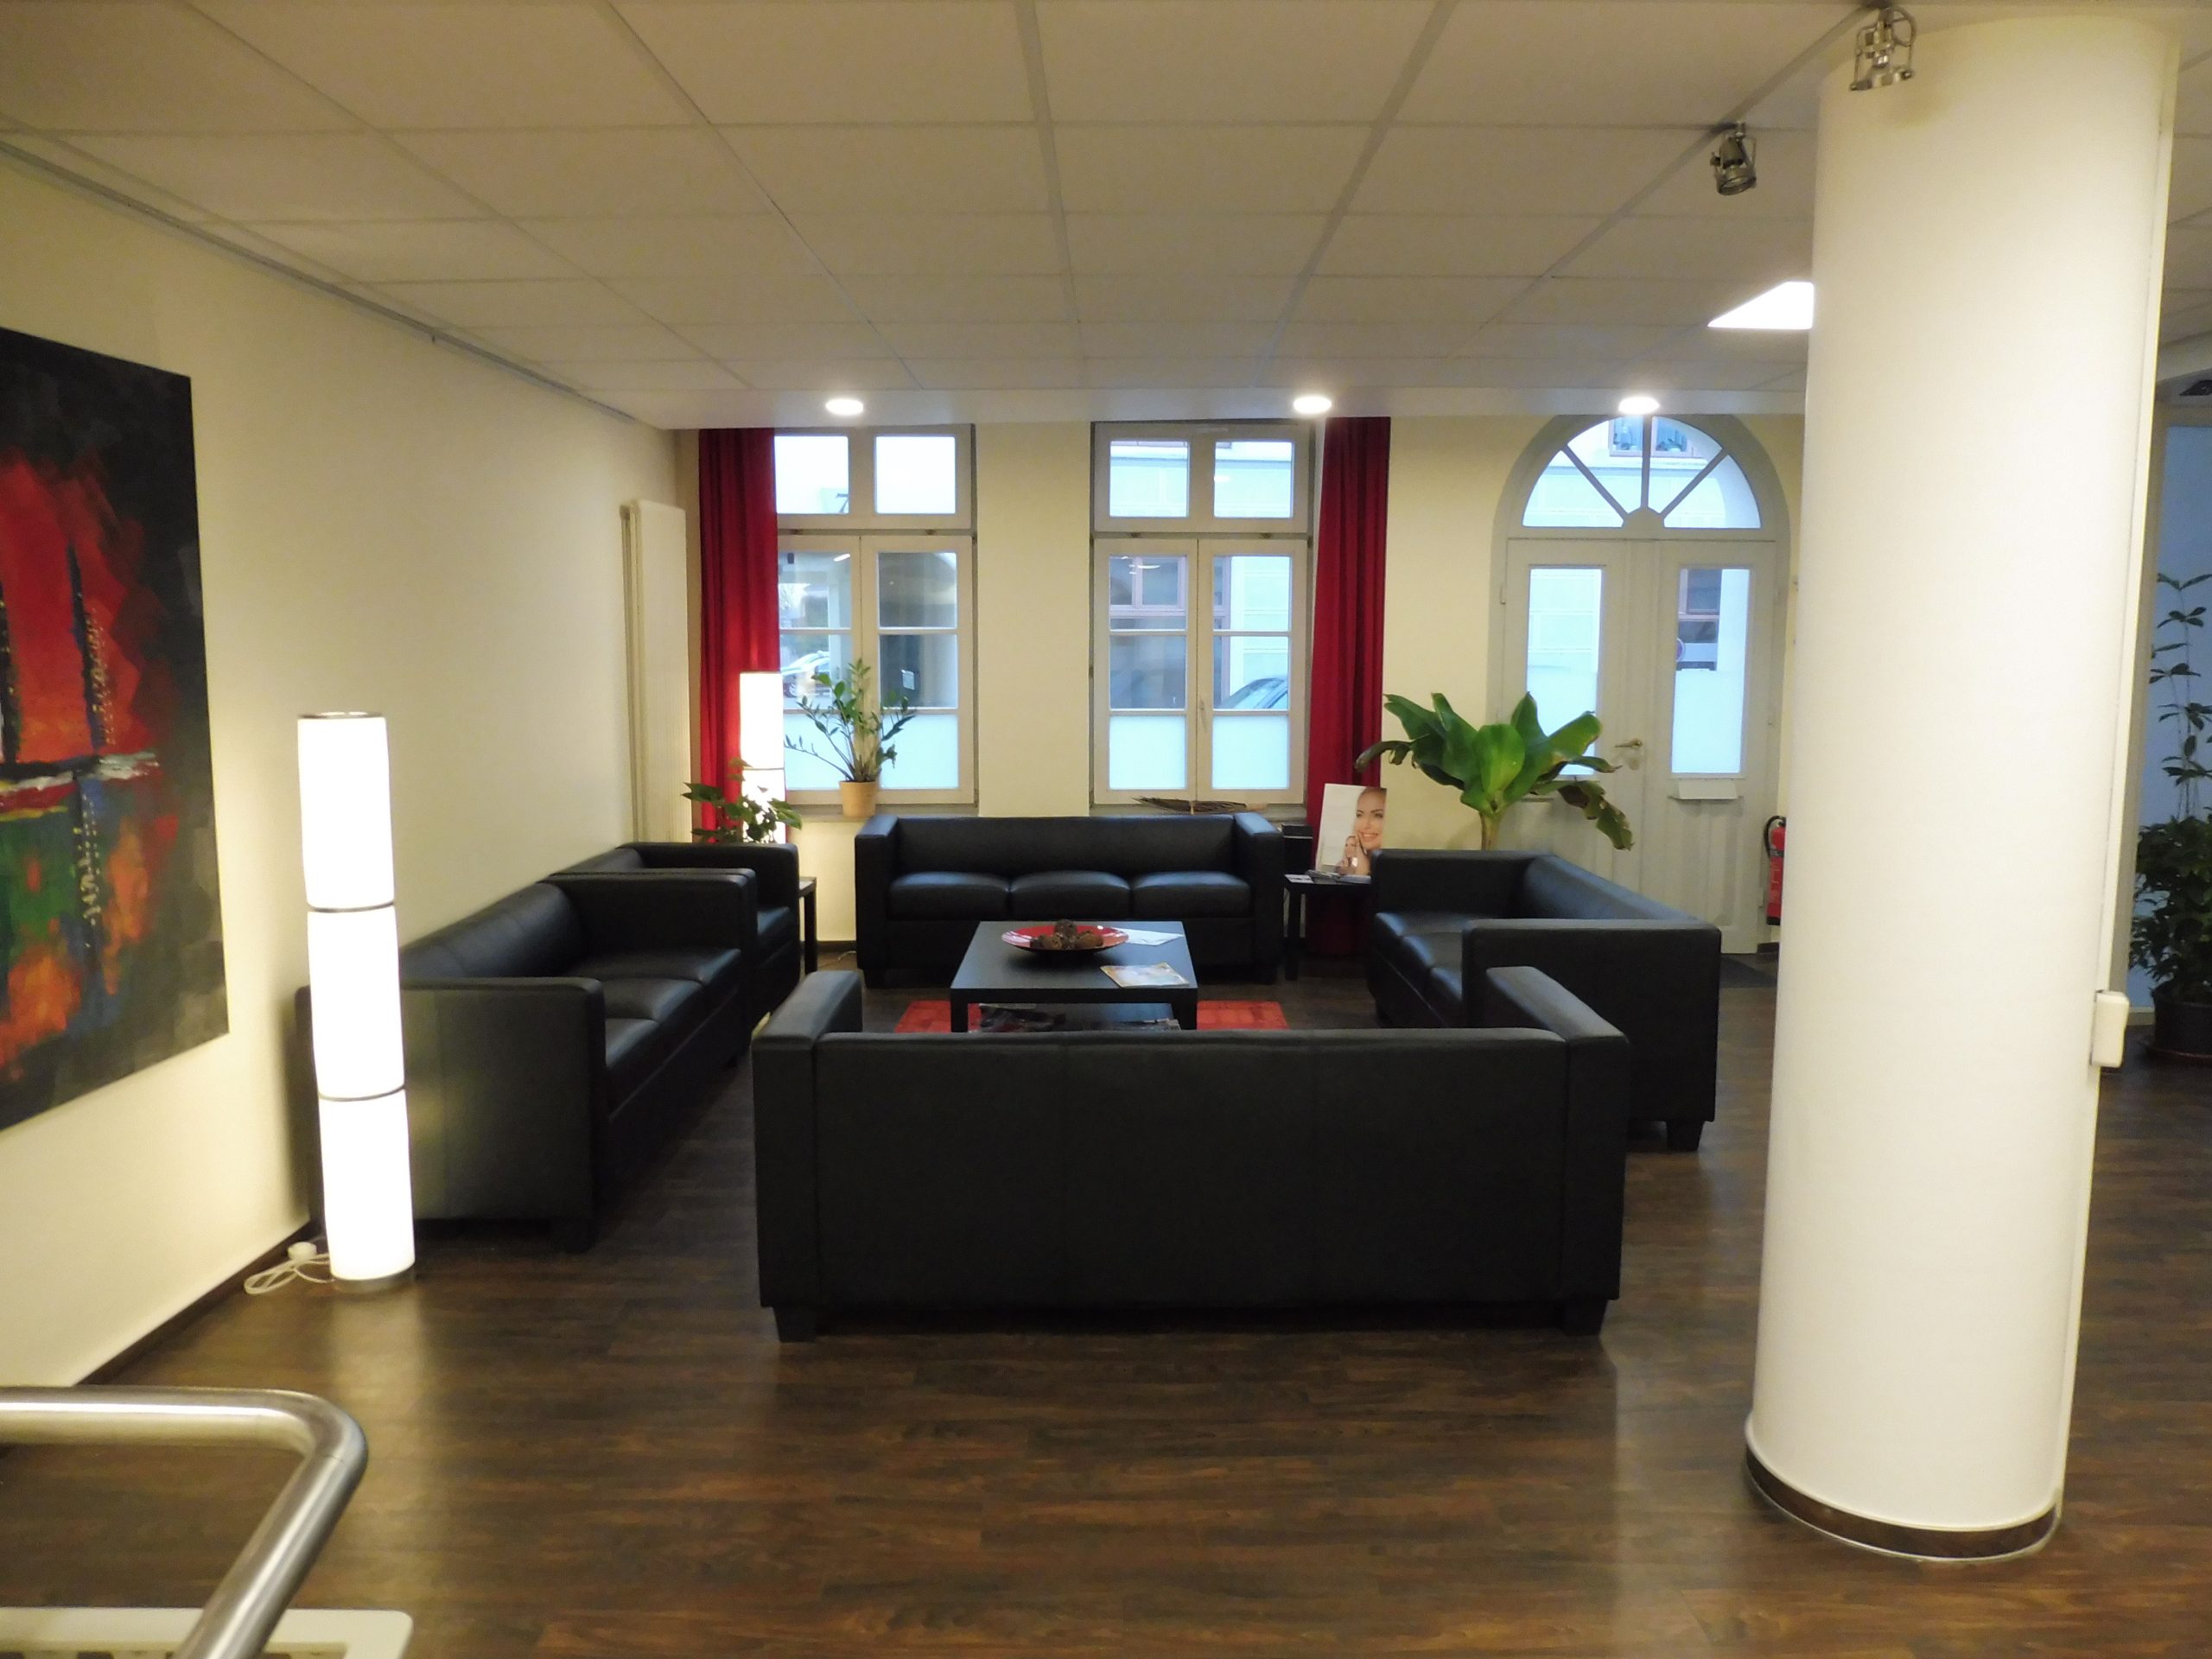 Der Wartebereich hat vier schwarze Sofagruppen um einem schwarzen Beistelltisch platziert. Vorhänge und Poster sind ebenfalls in einem schwarz-roten Frabschema. Pflanzen und viele Lichter runden den Raum ab.